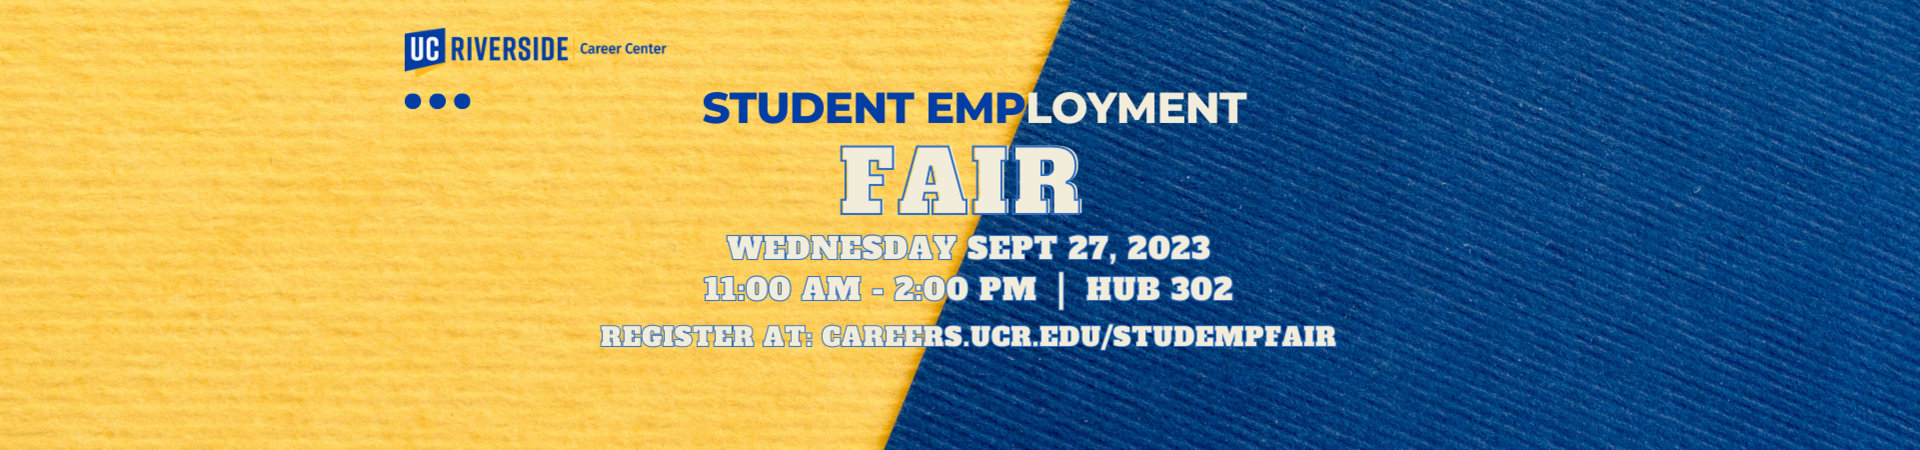 student employment fair